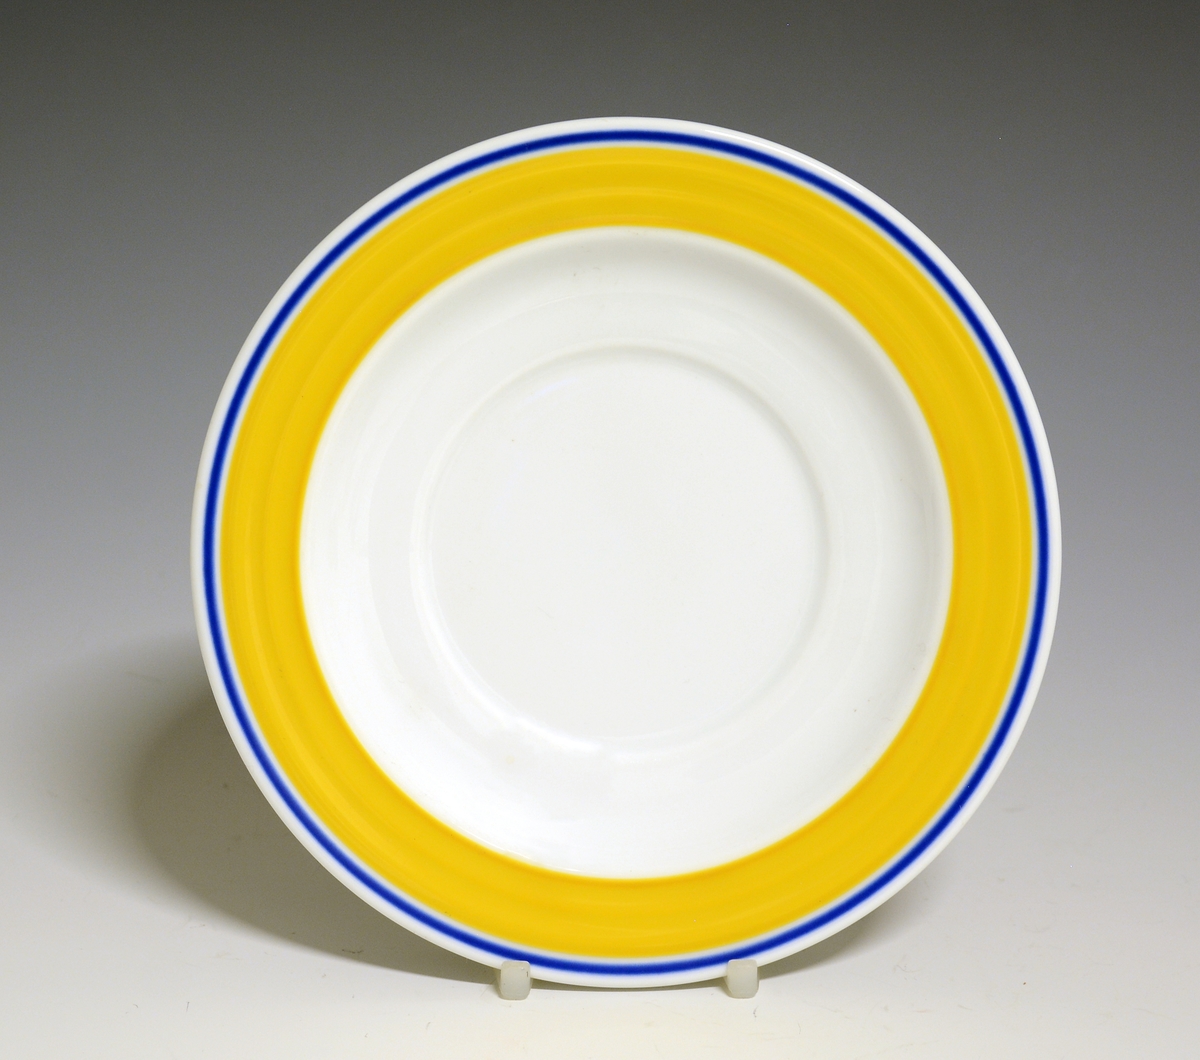 Teskål av porselen. Hvit glasur, fanen dekorer med et gult bånd og en blå stripe.
Modell: Saturn
Dekor: Saturn Gul
Designet av Grete Rønning